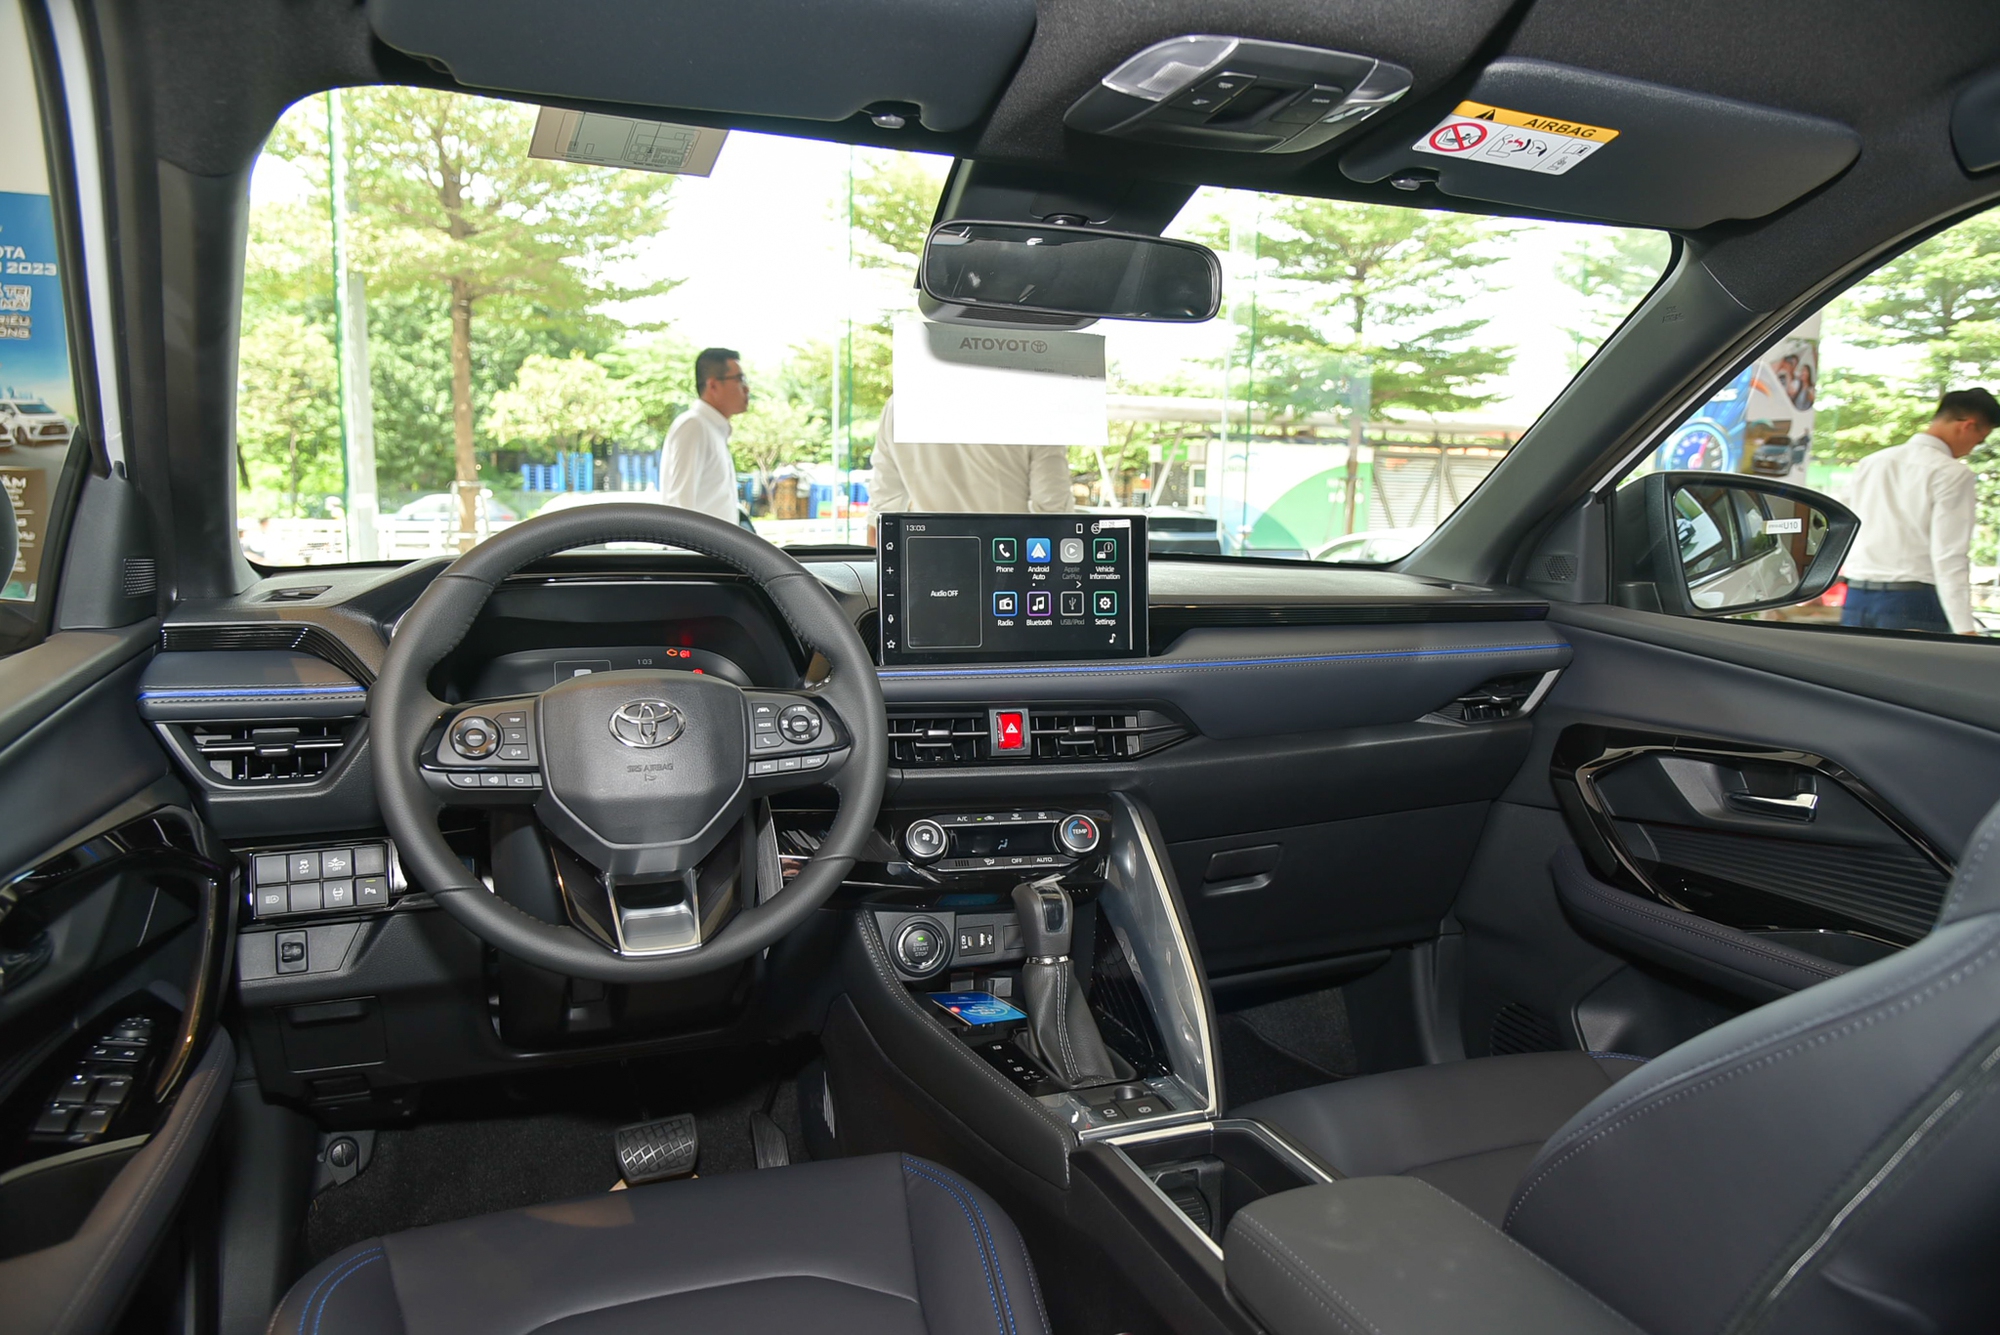 Ngồi thử Toyota Yaris Cross bản thuần xăng giá 730 triệu đồng: Rẻ hơn 100 triệu nhưng 'option' không khác biệt nhiều - Ảnh 7.